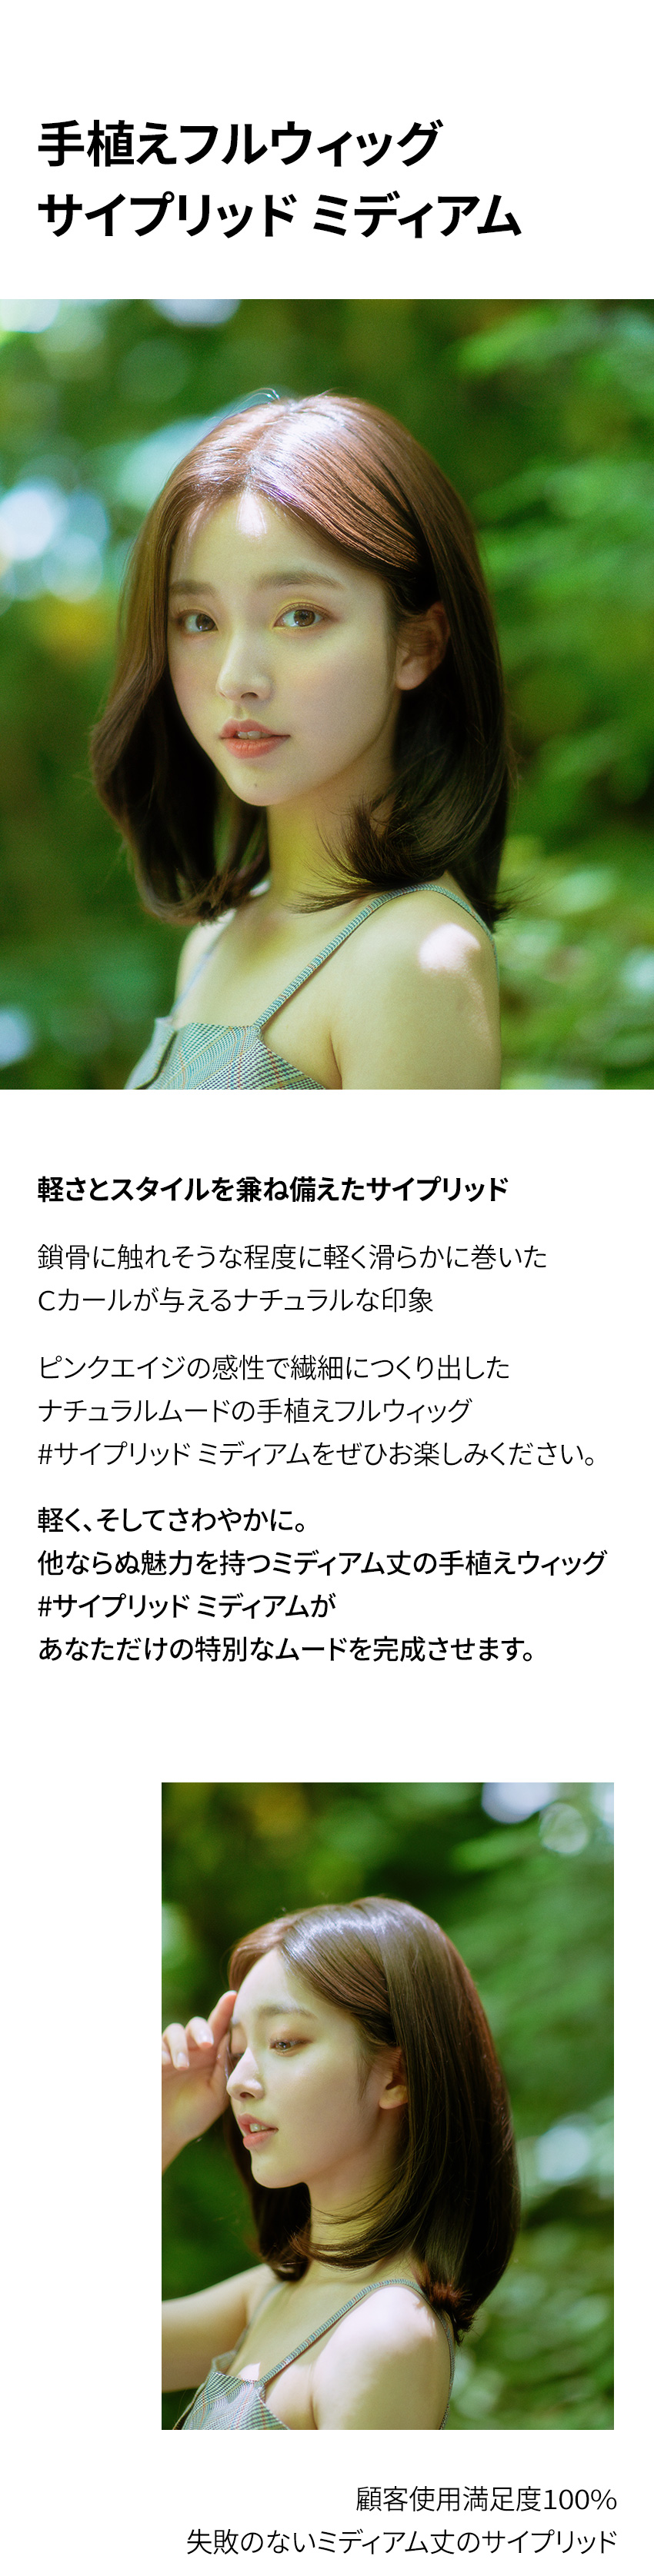 手植えフルウィッグ) サイプリッド ミディアム (モースト原糸)-PINK AGE 「ピンクエイジ」